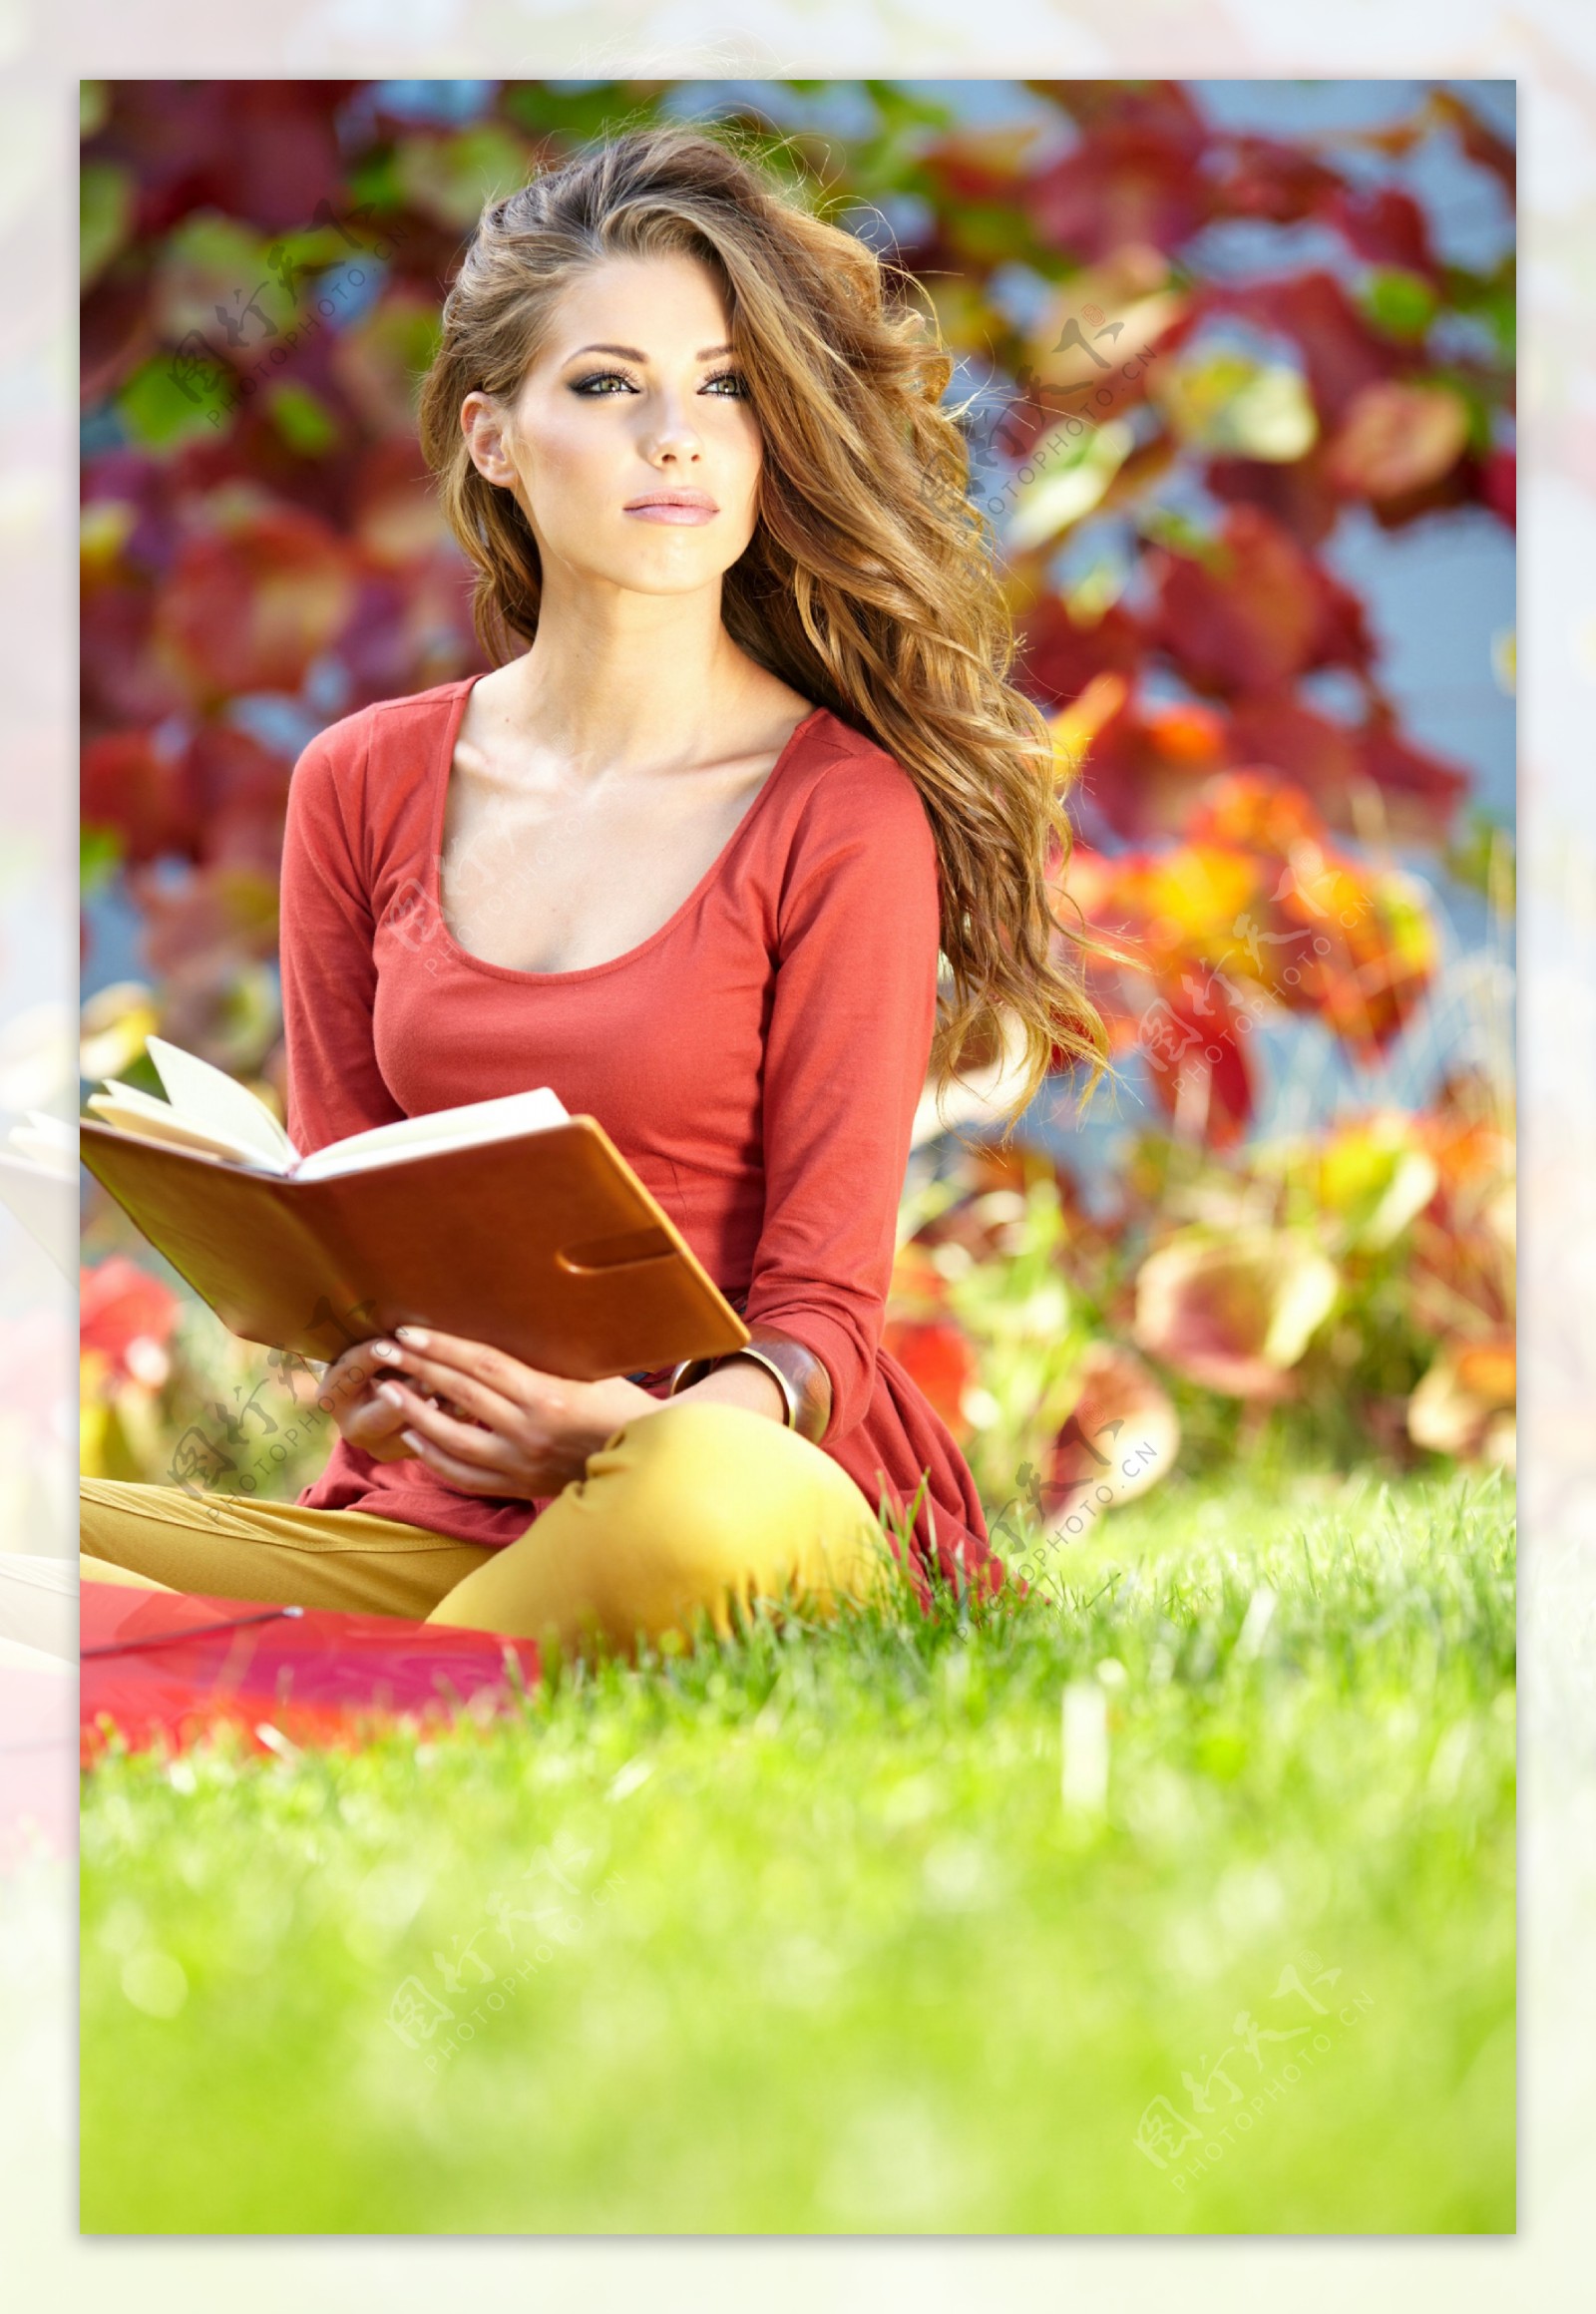 坐在草地上看书的外国美女图片